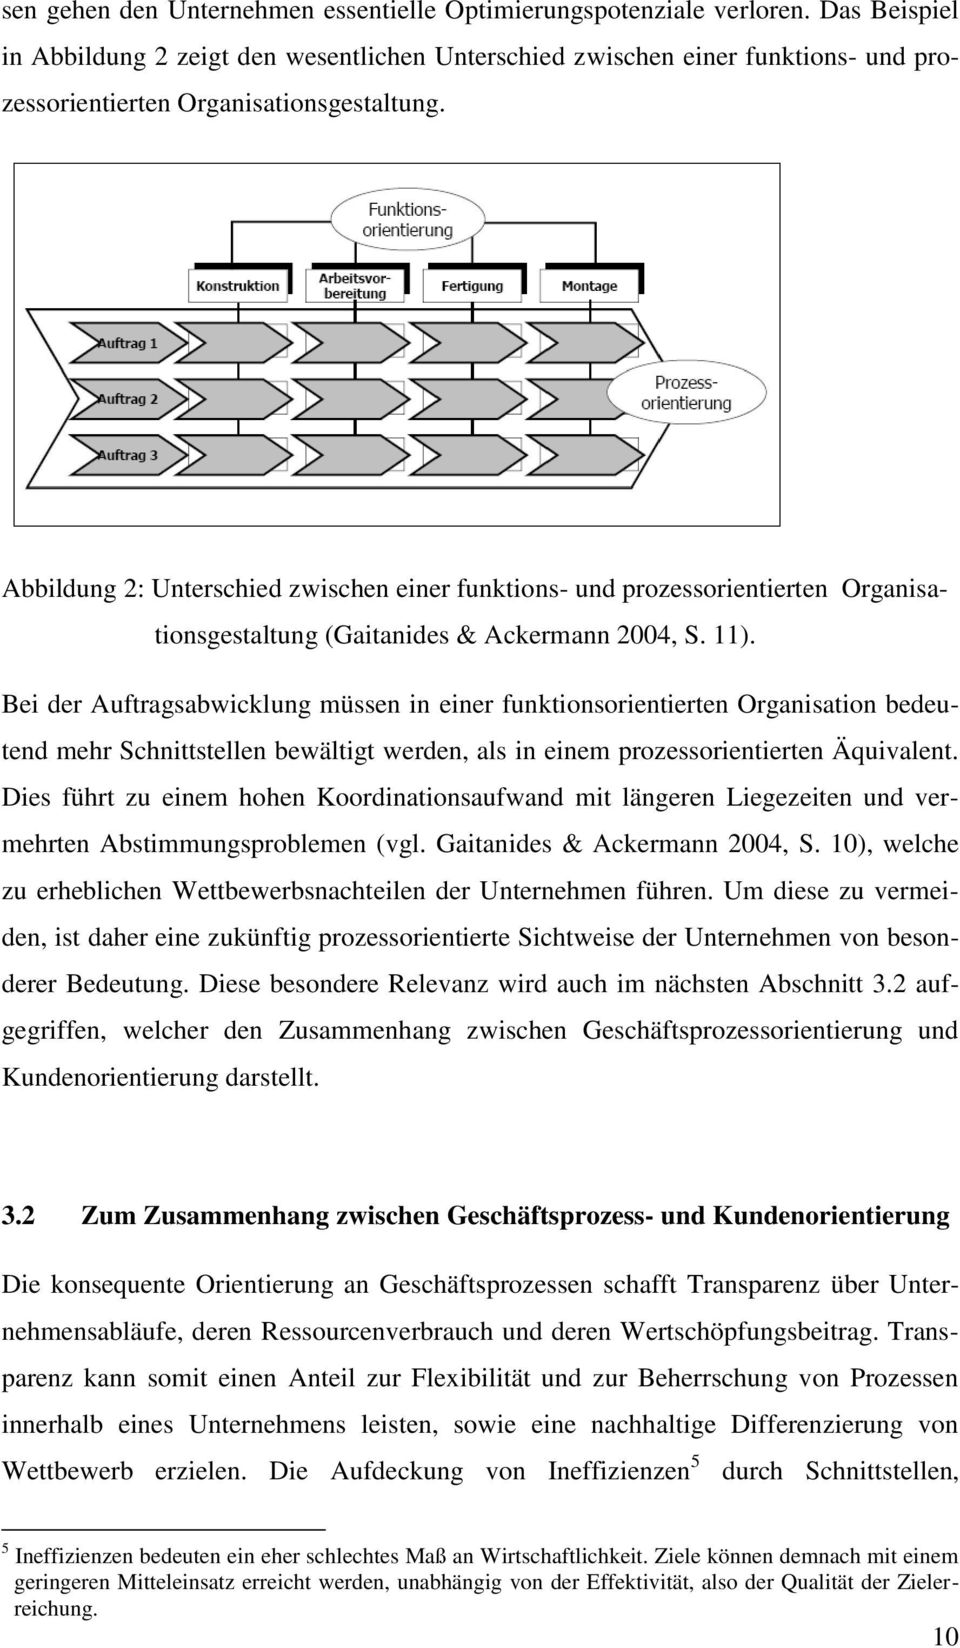 Abbildung 2: Unterschied zwischen einer funktions- und prozessorientierten Organisationsgestaltung (Gaitanides & Ackermann 2004, S. 11).